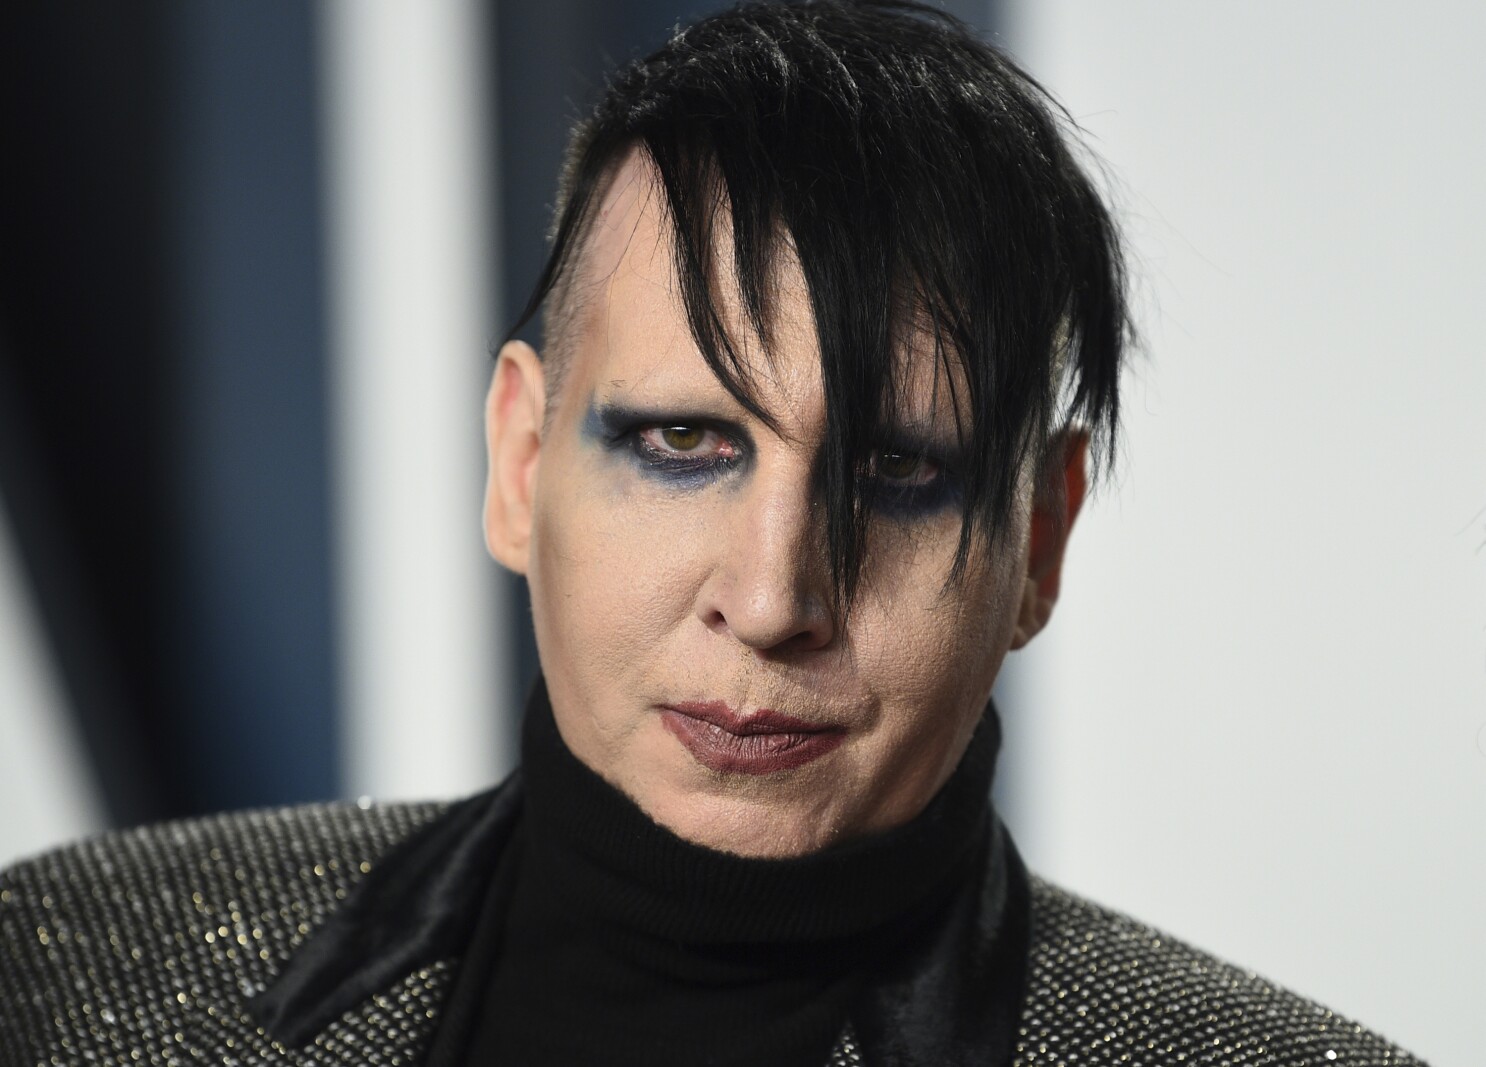 Marilyn Manson accuses Evan Rachel Wood of conspiracy, fraud - Los Angeles Times